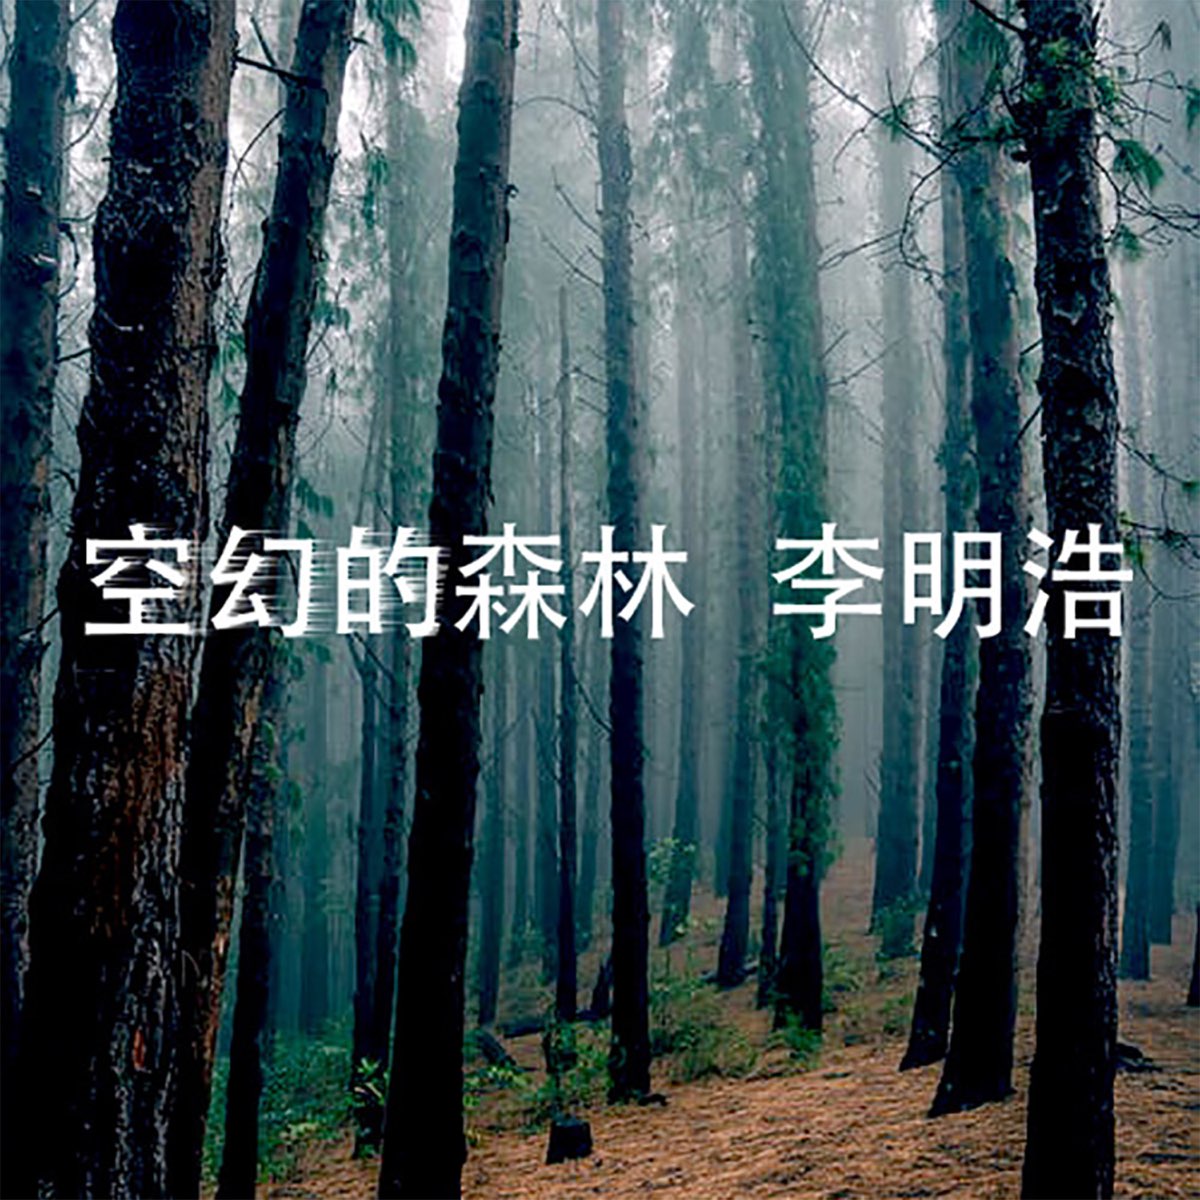 空幻的森林by 李明浩on Apple Music